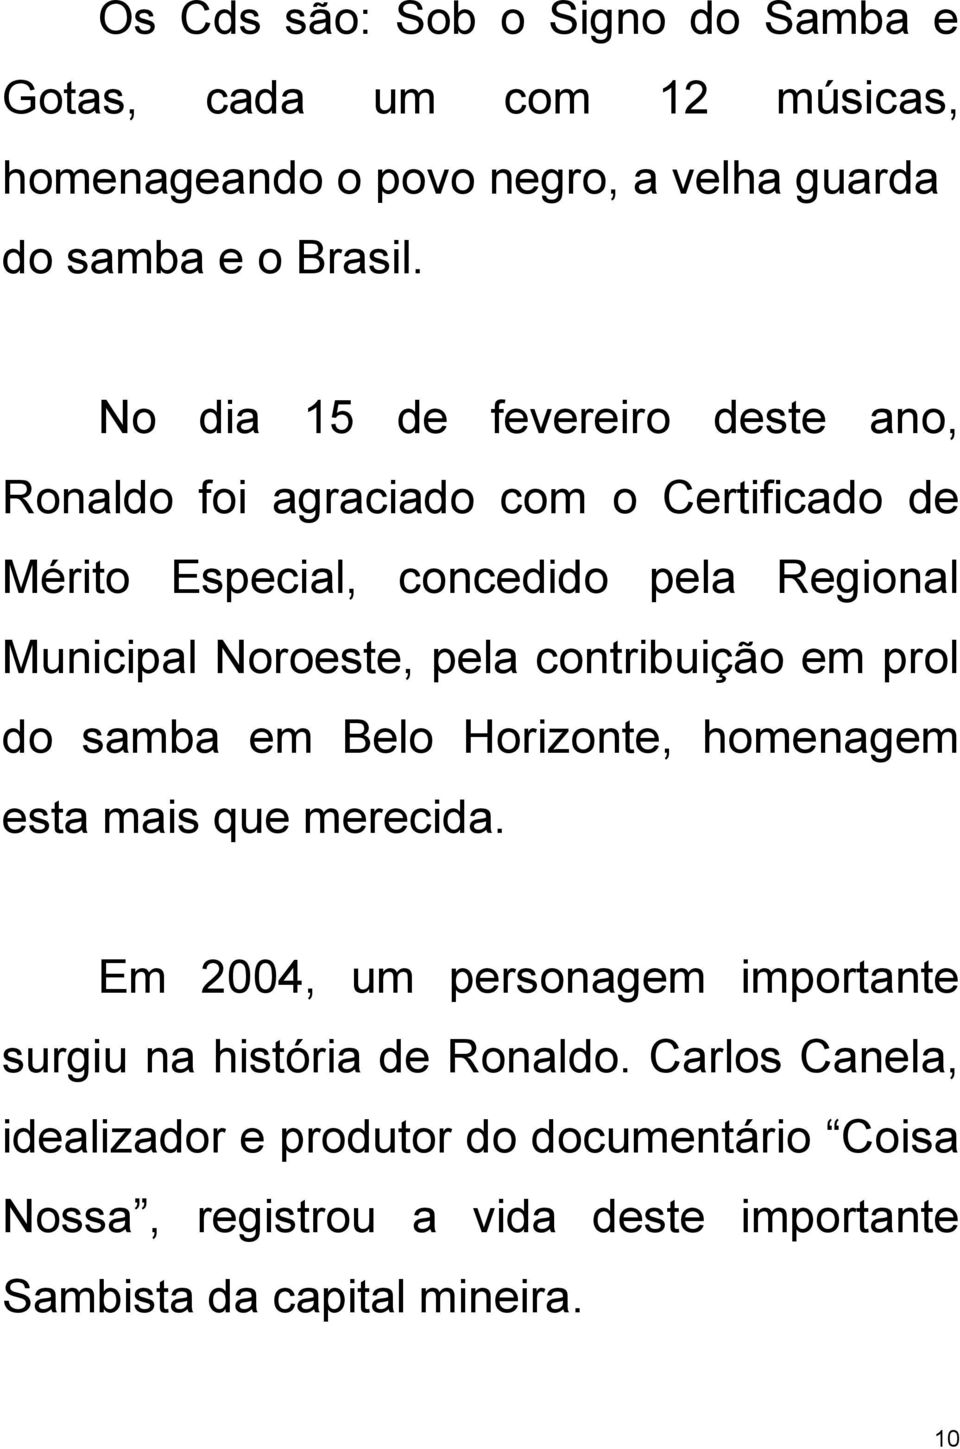 pela contribuição em prol do samba em Belo Horizonte, homenagem esta mais que merecida.